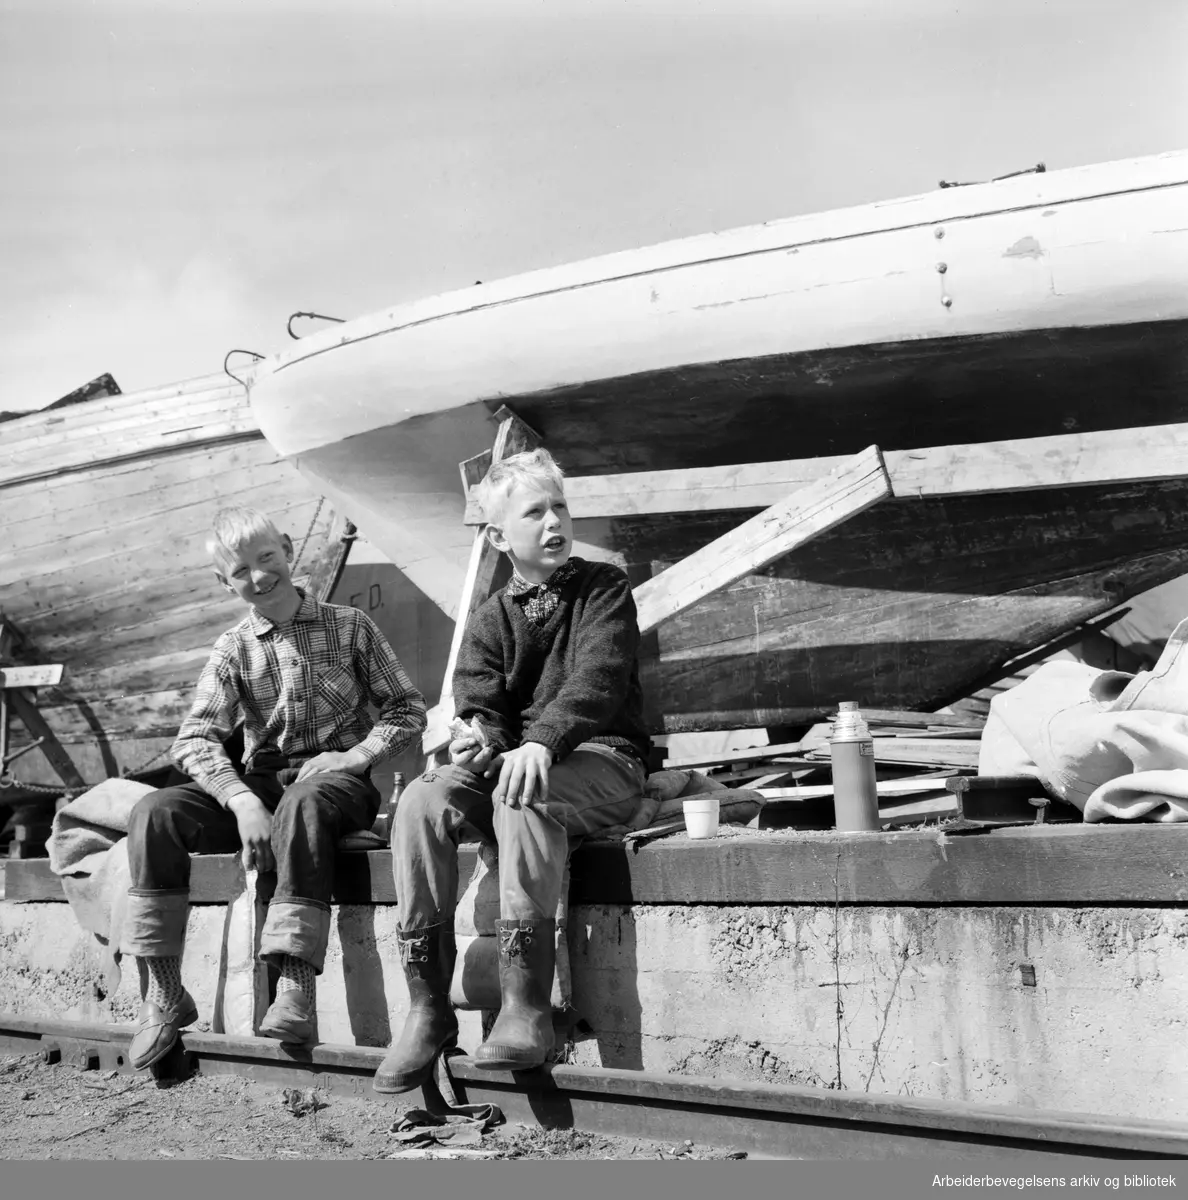 Trebåter i vinteropplag. Knut Erik Bockelie (til høyre) og klassekameraten Trond Bakkevig fra Nesbru i Asker pusser opp seilbåten Marmara. Karenslyst - Sjølyst. Mai 1960.